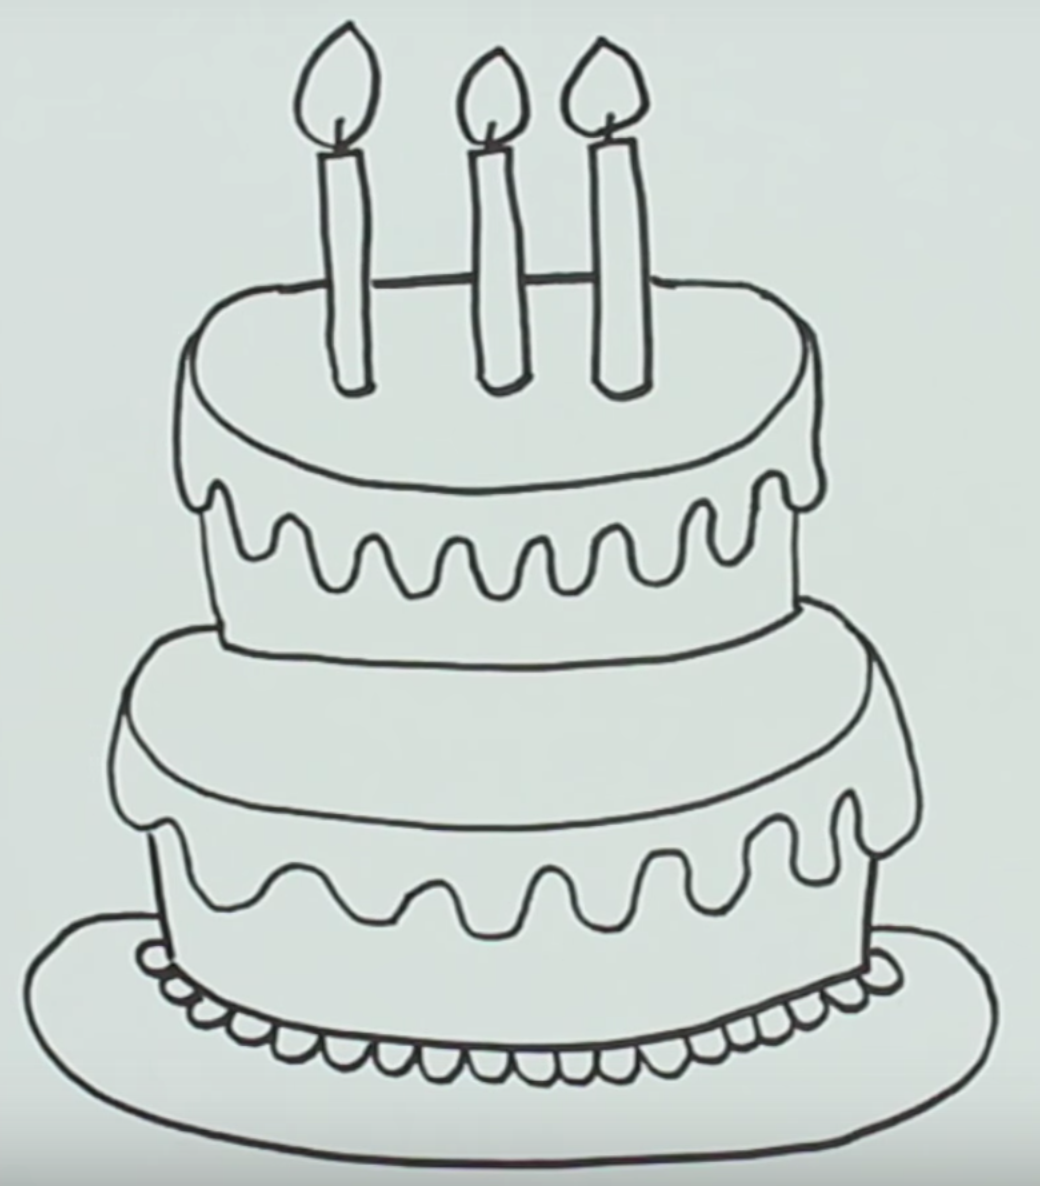 Рисунок торта для срисовки. Торт рисунок для детей карандашом. Рисунок торта на день рождения карандашом. Рисунки тортиков для срисовки. Что можно нарисовать на день рождения легкое